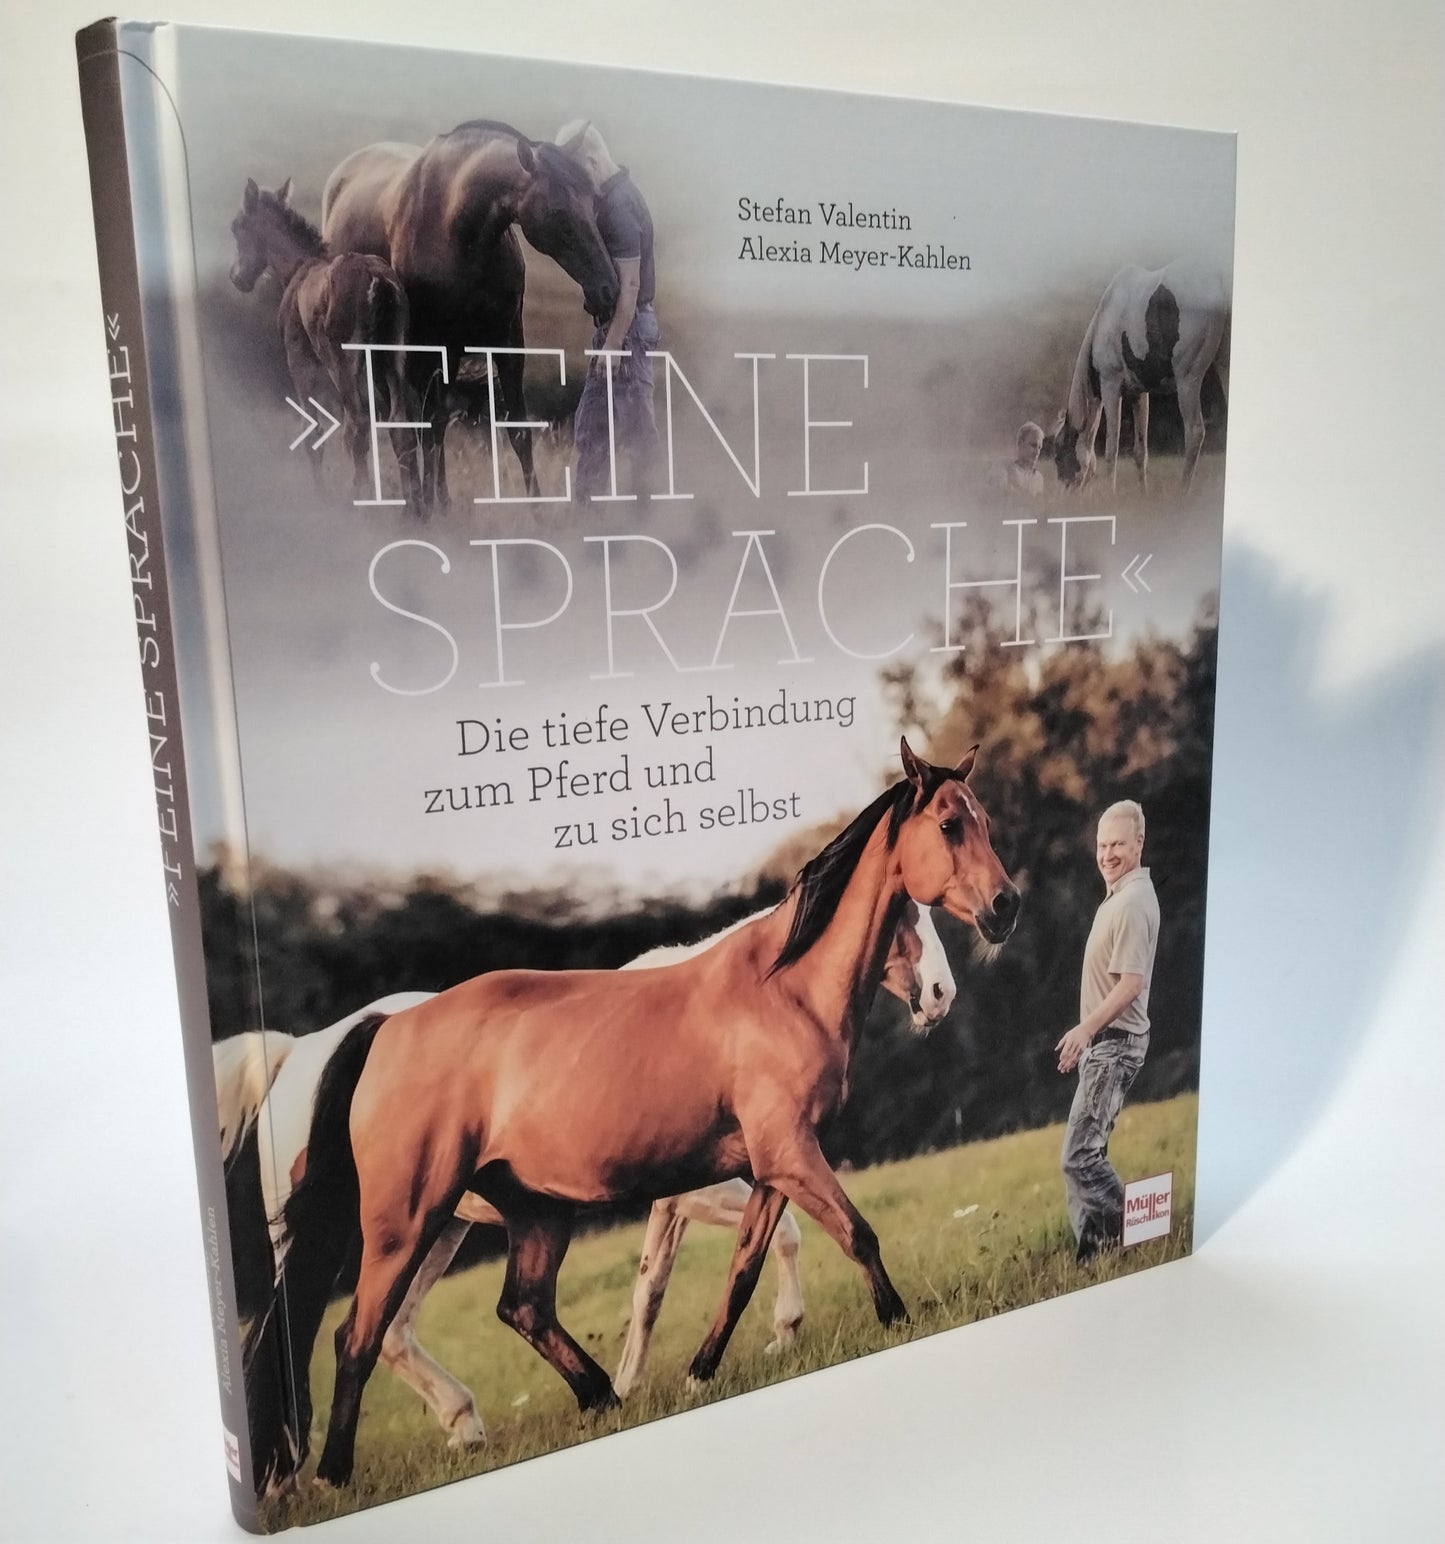 Stefan Valentin / Alexia Meyer-Kahlen »Feine Sprache« - Die tiefe Verbindung zum Pferd und zu sich selbst